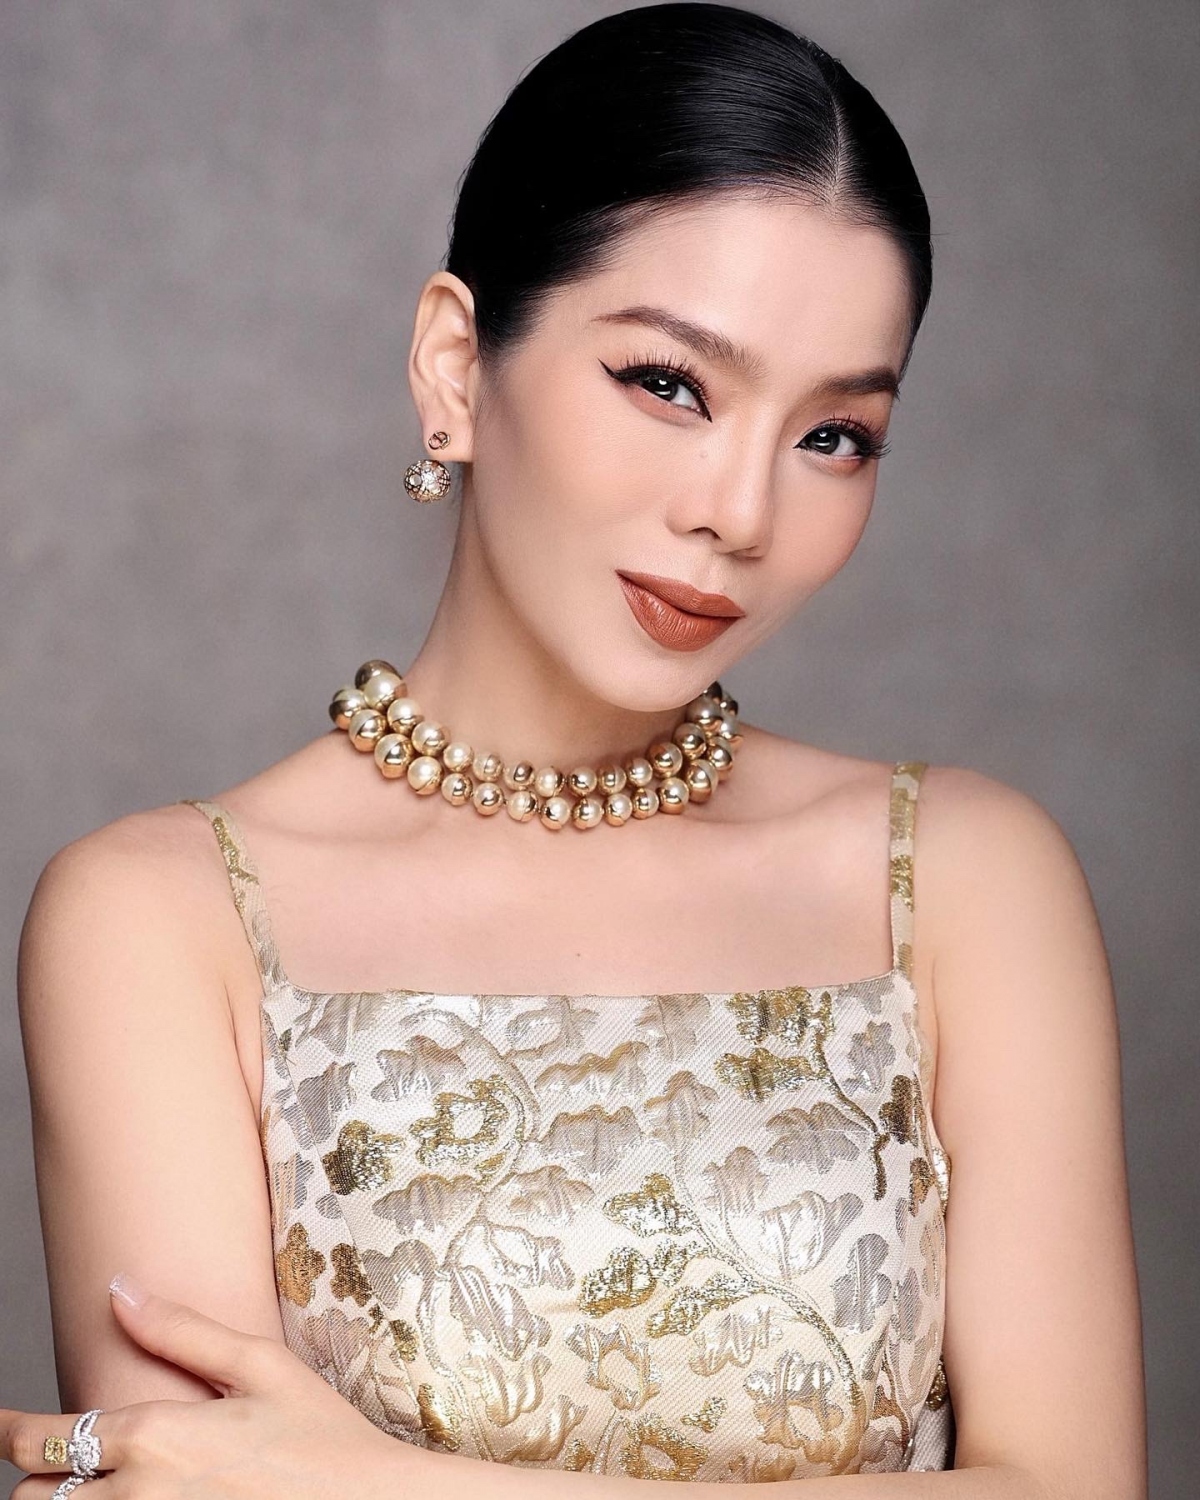 Lệ Quyên là nữ ca sĩ nổi tiếng của showbiz Việt